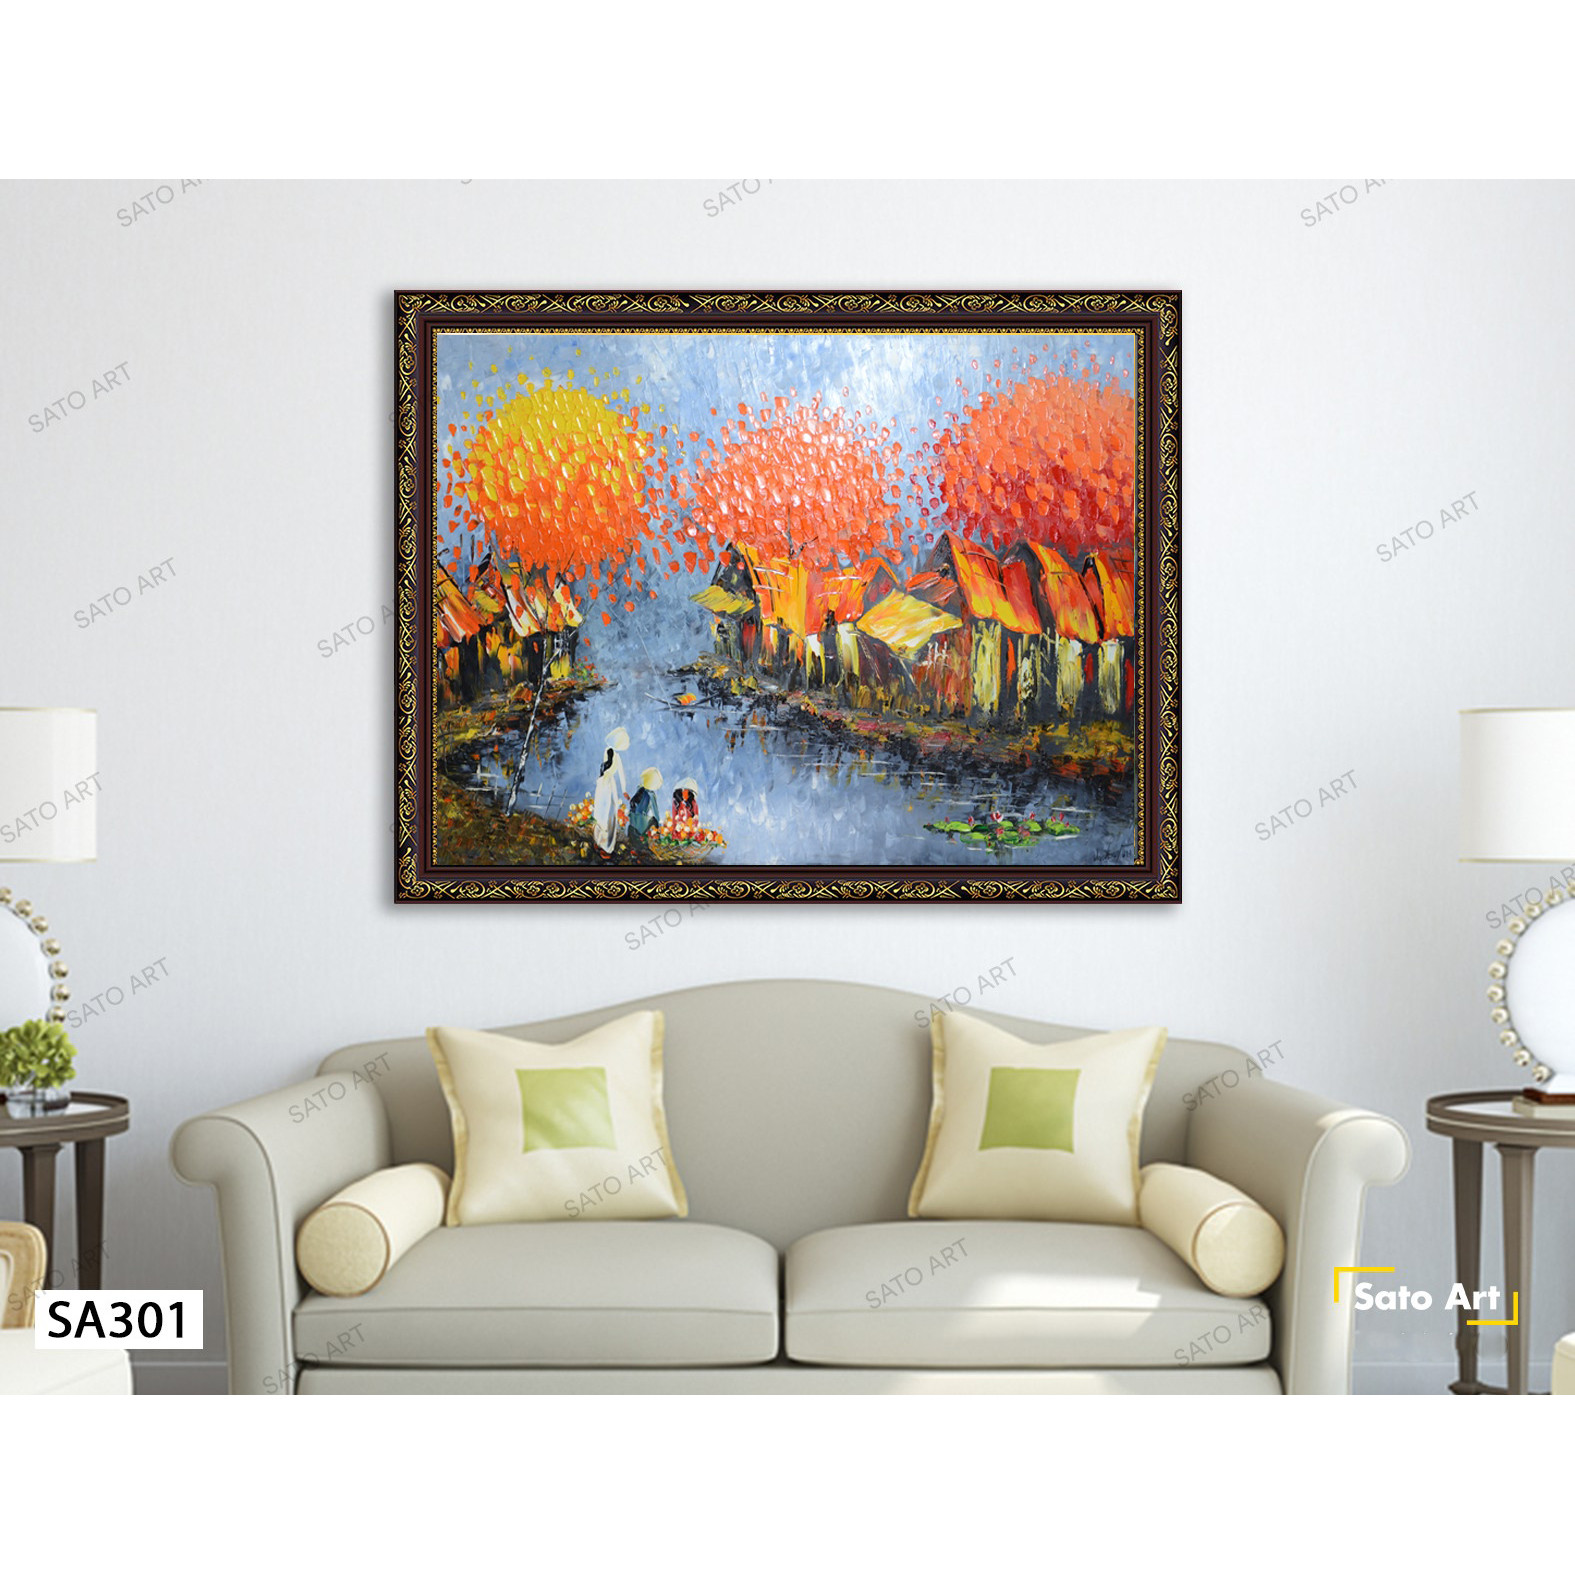 Tranh sơn dầu vẽ tay - tranh phong cảnh - tranh treo tường phòng khách